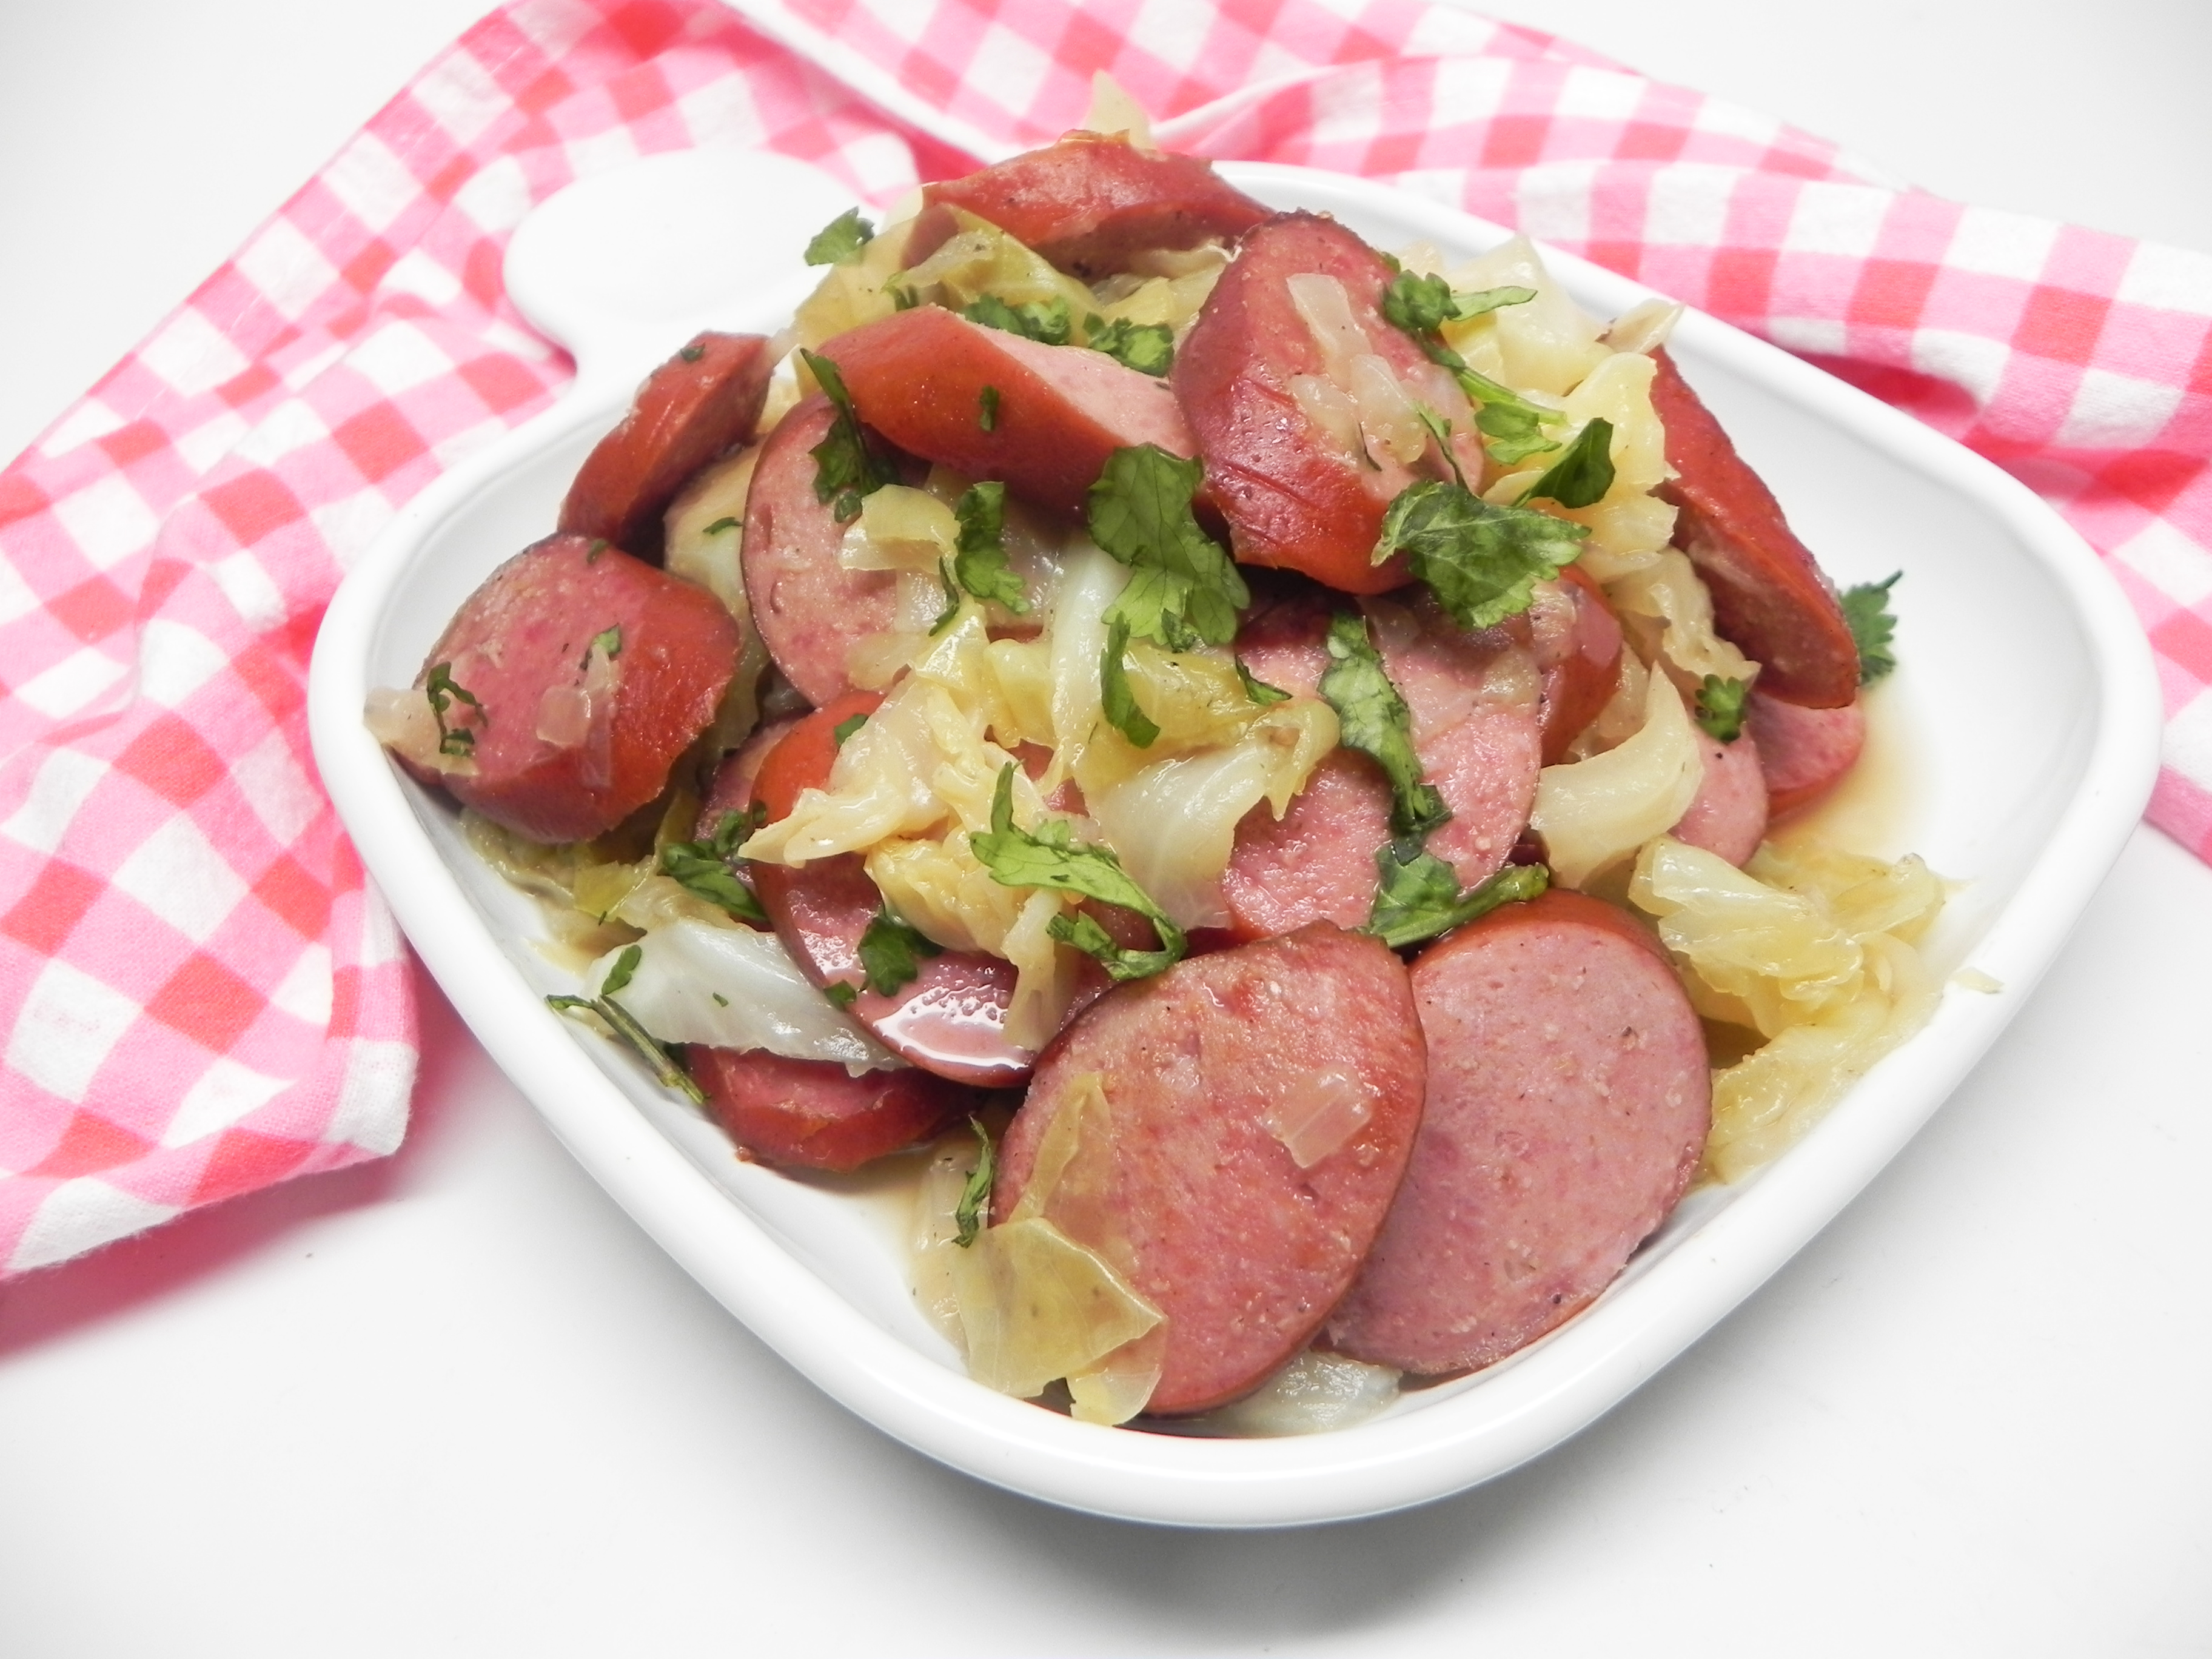 Cabbage Stir-Fry with Smoked Turkey Sausage